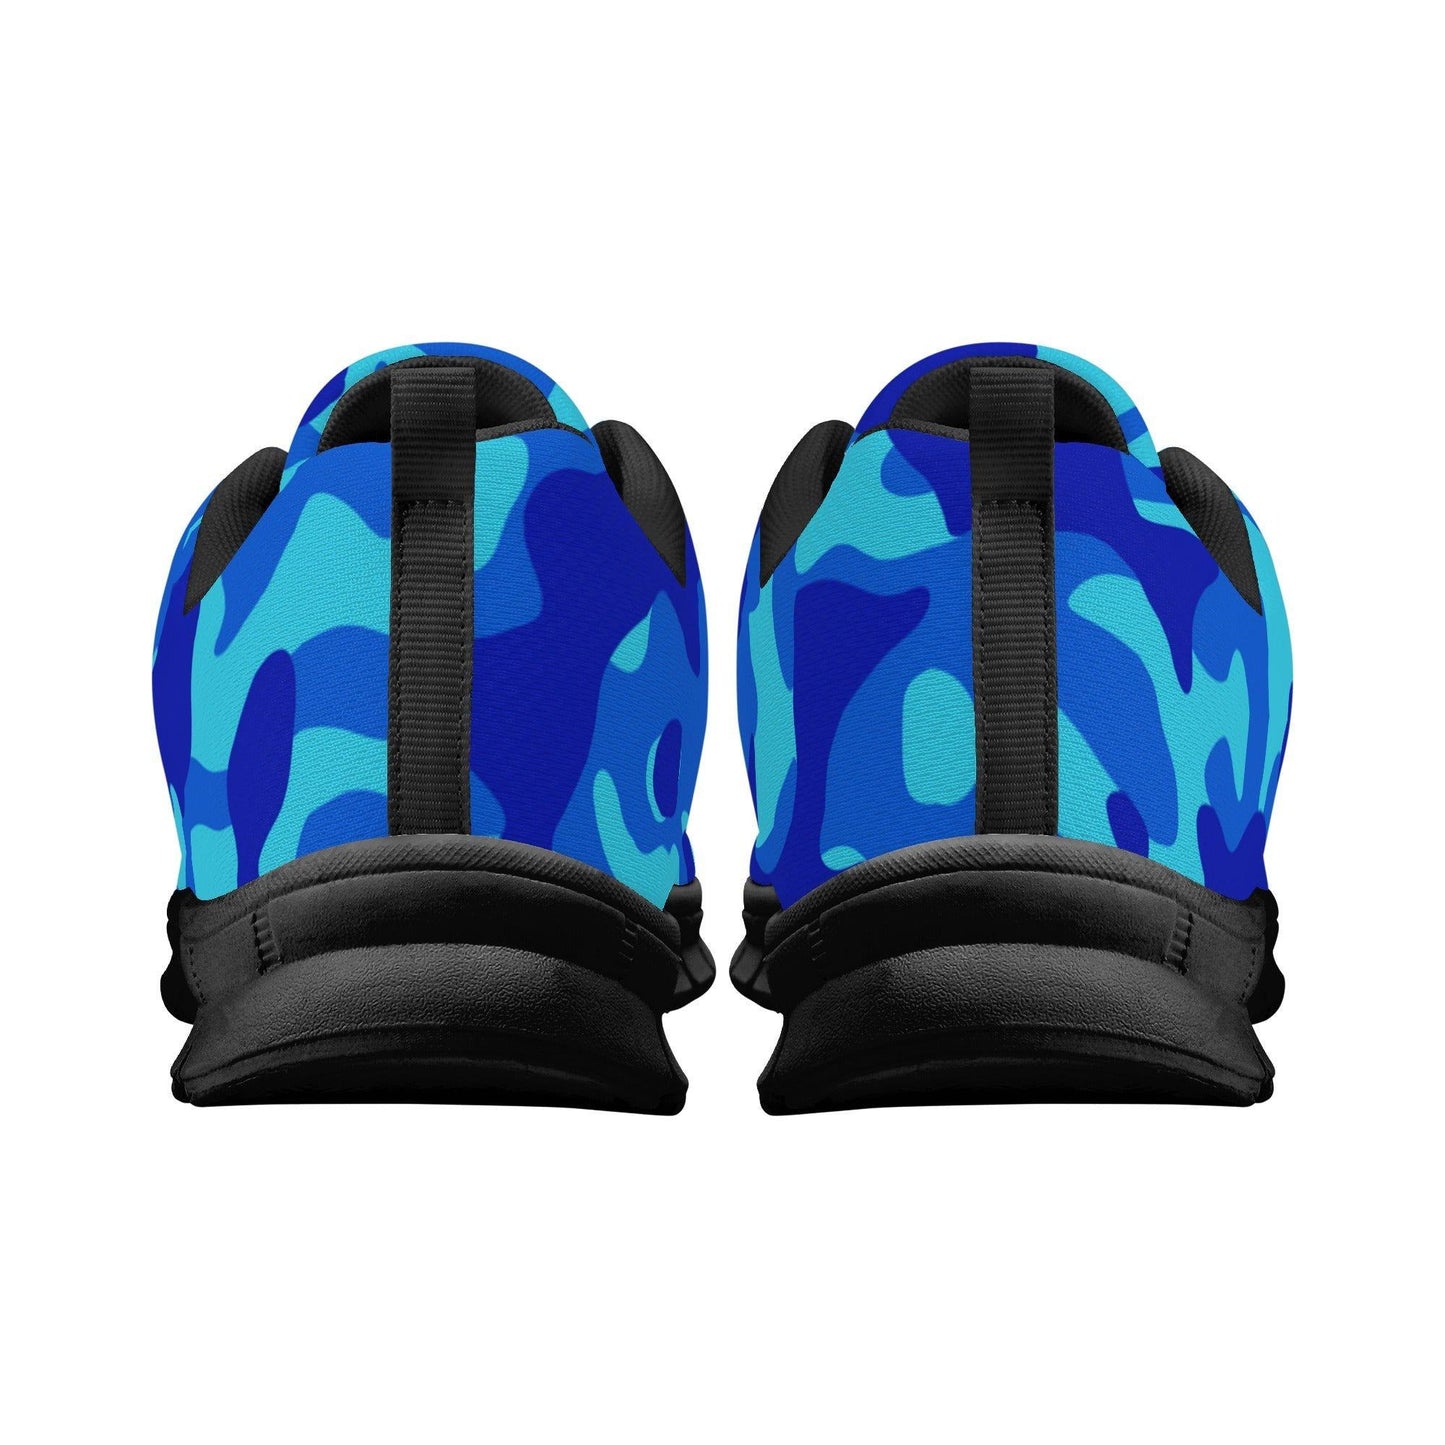 Blue Camouflage Damen Laufschuhe Laufschuhe 77.99 Blue, Camouflage, Damen, Laufschuhe JLR Design